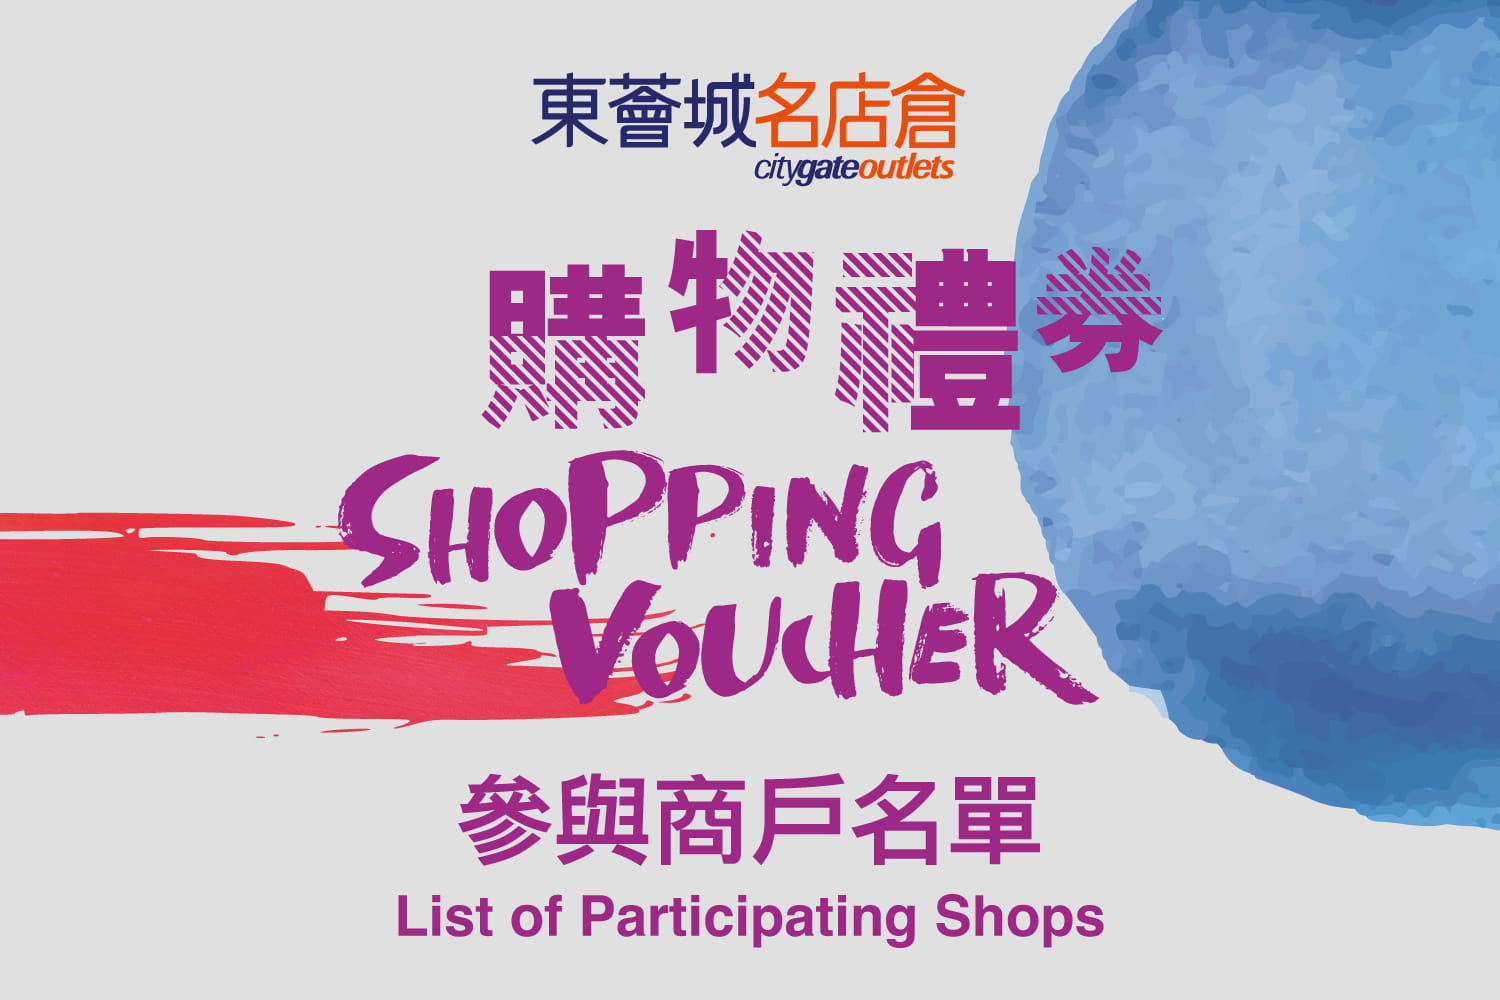 Citygate Outlets Shopping e-Voucher – List of Participating Shops